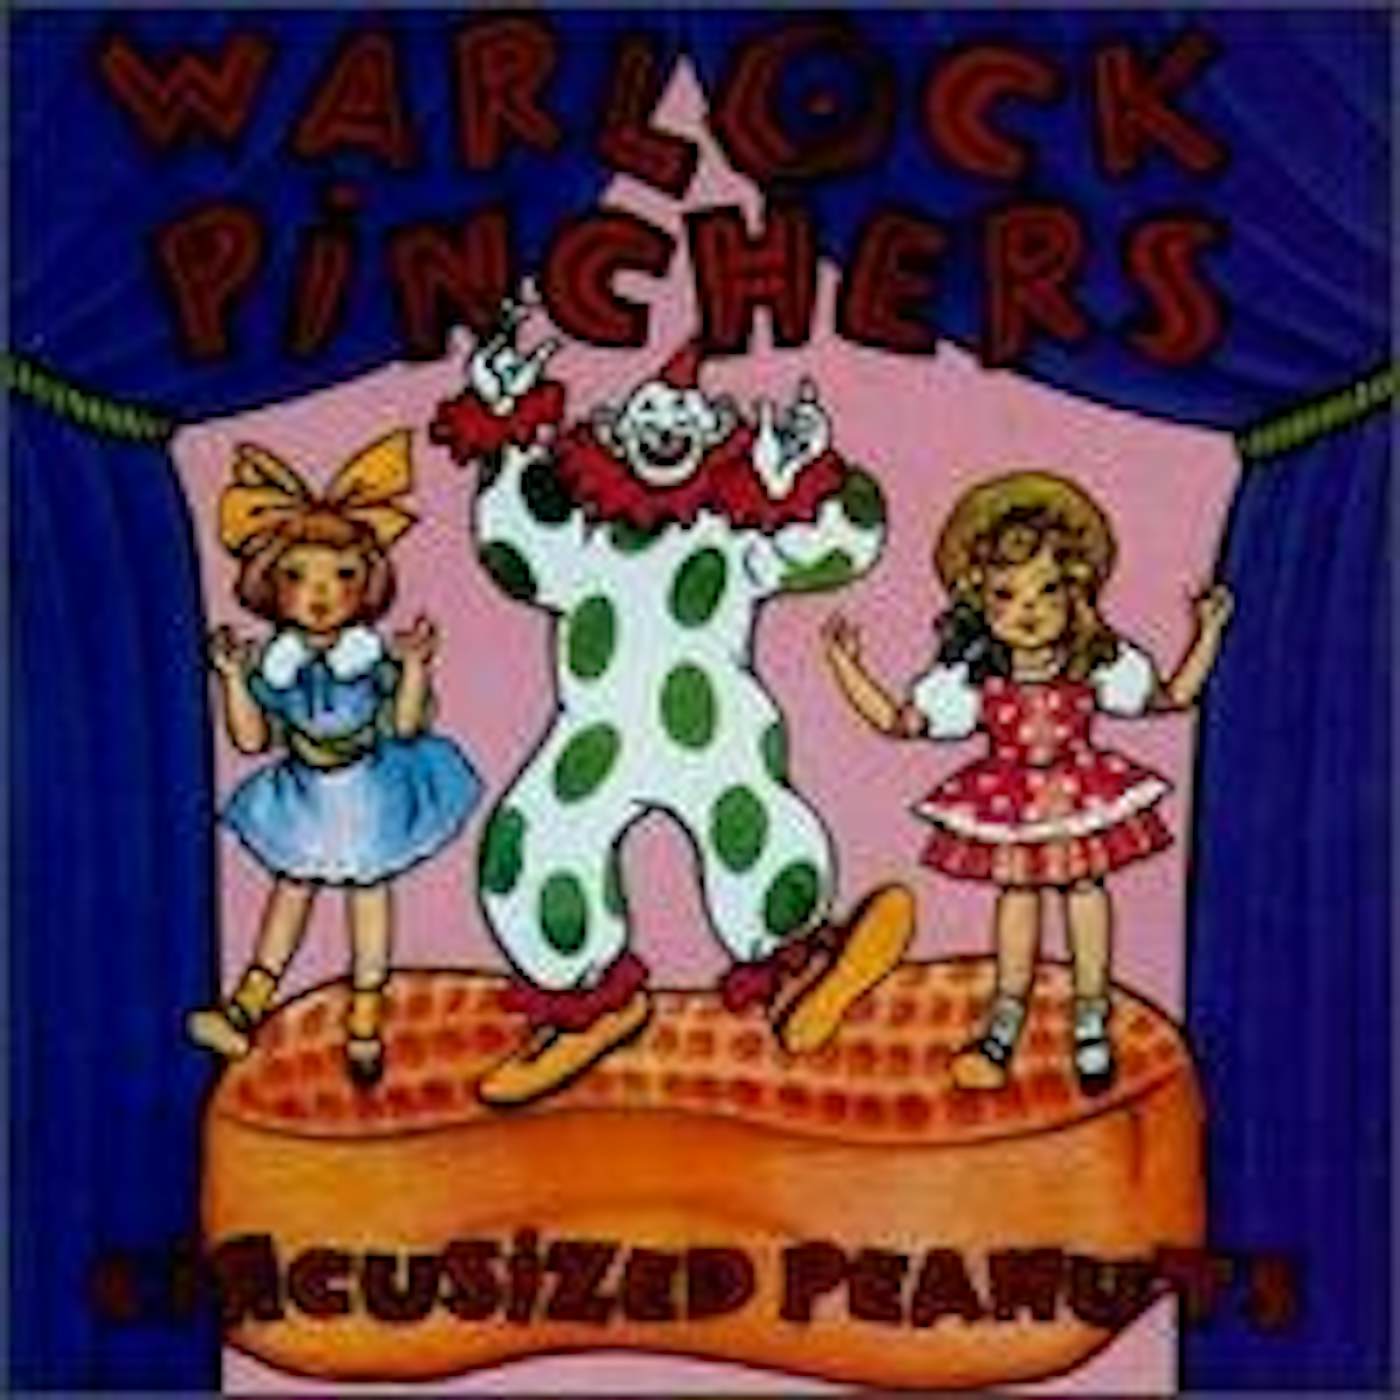 Warlock Pinchers Circusized Peanuts Vinyl Record